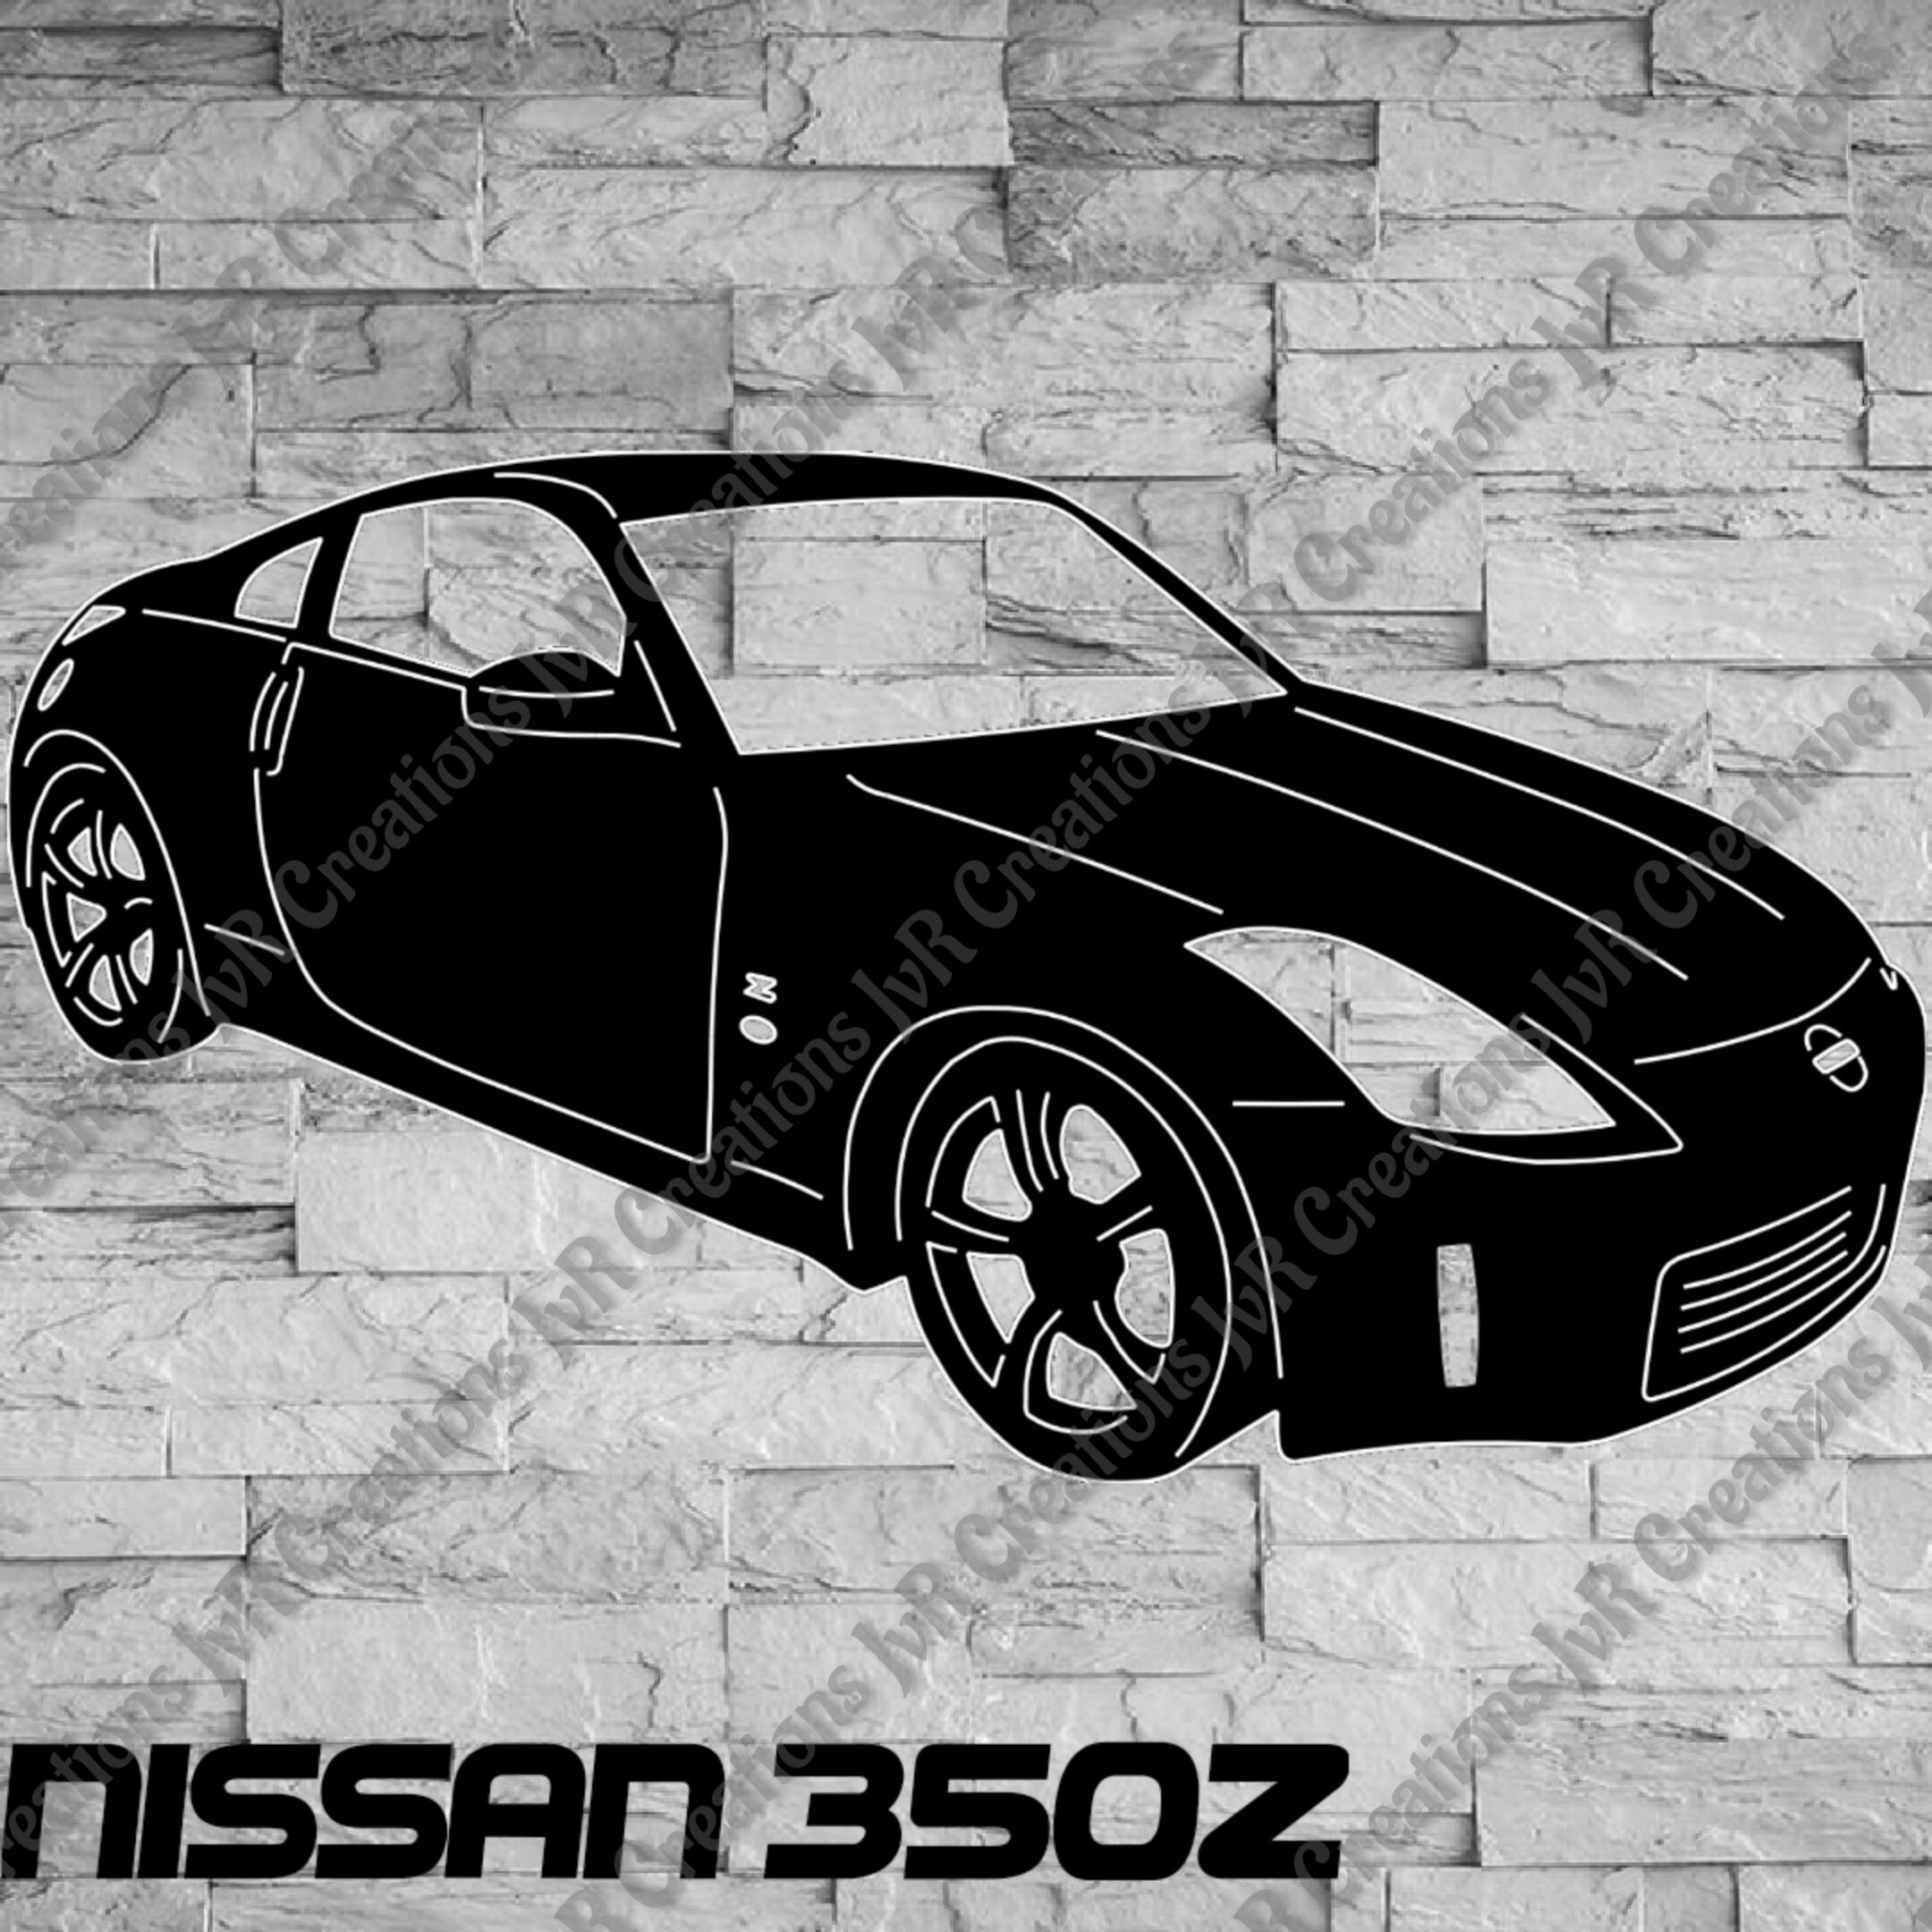 Auto Kohlefaser Einstiegsleisten Für NIS-san 350Z Tuning Zubehör 4 STÜCKE Auto Scuff Plate Türschwelle Sill Aufkleber 